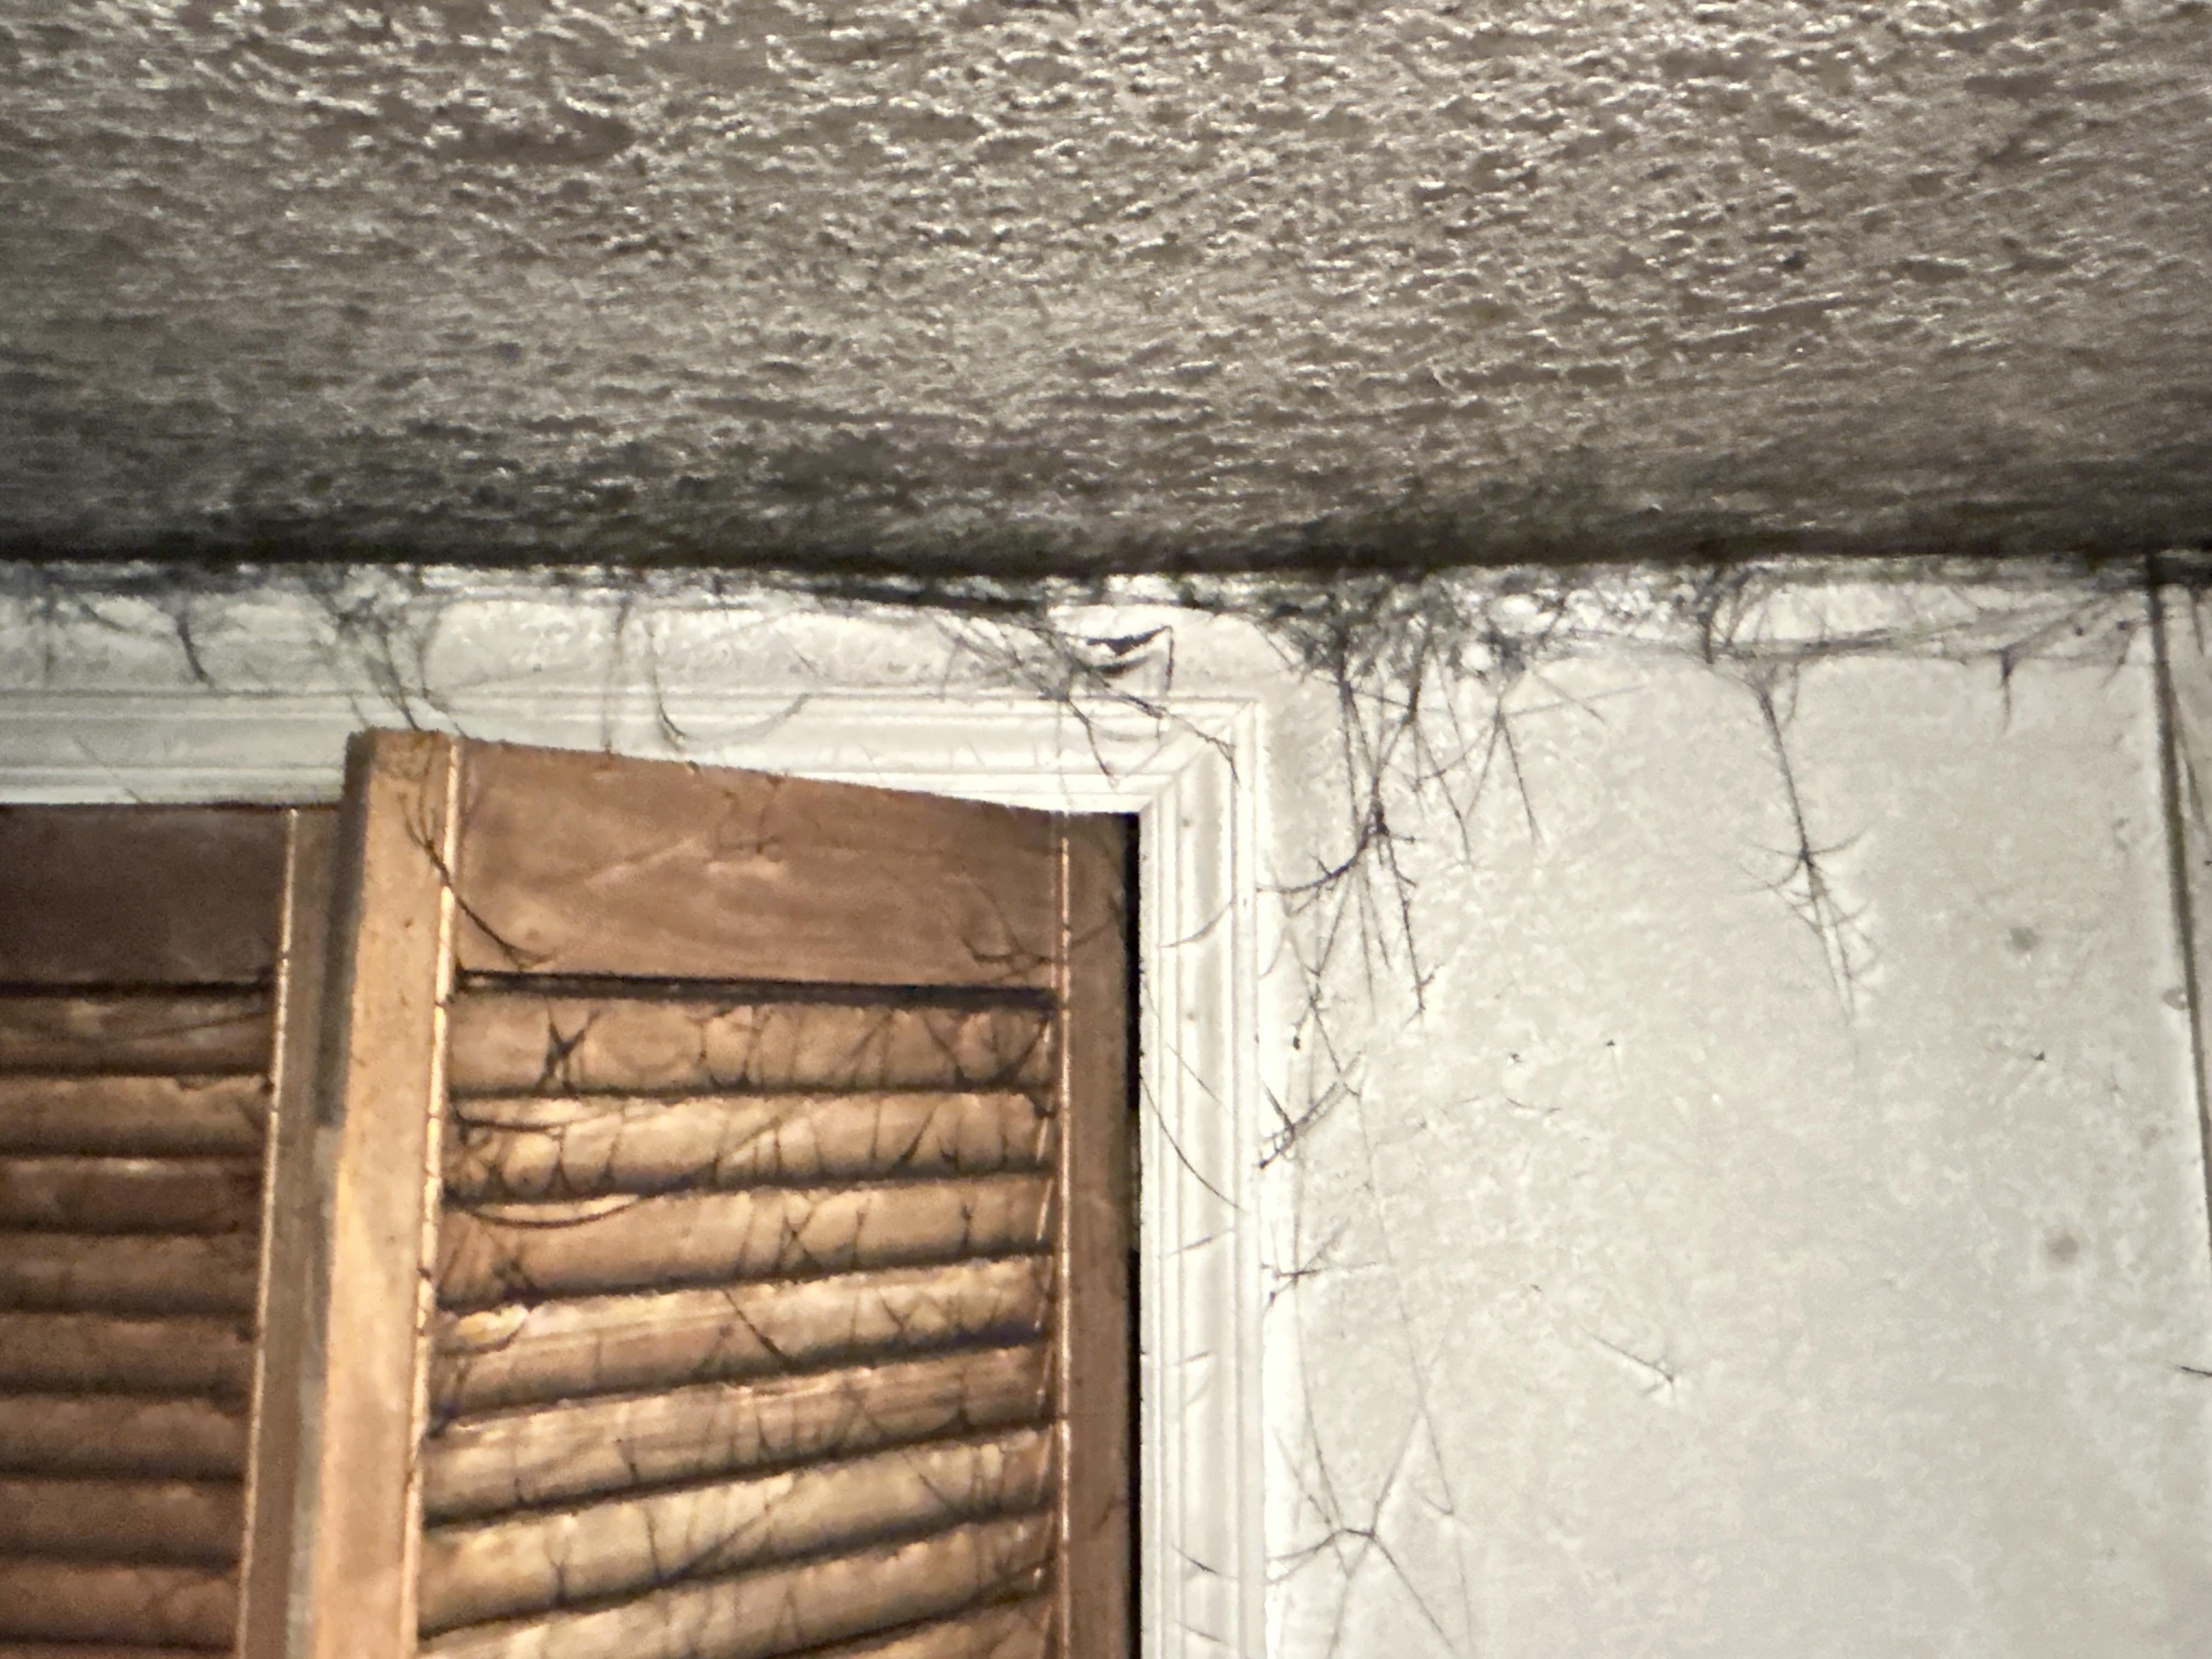 Soot Webs in Basement